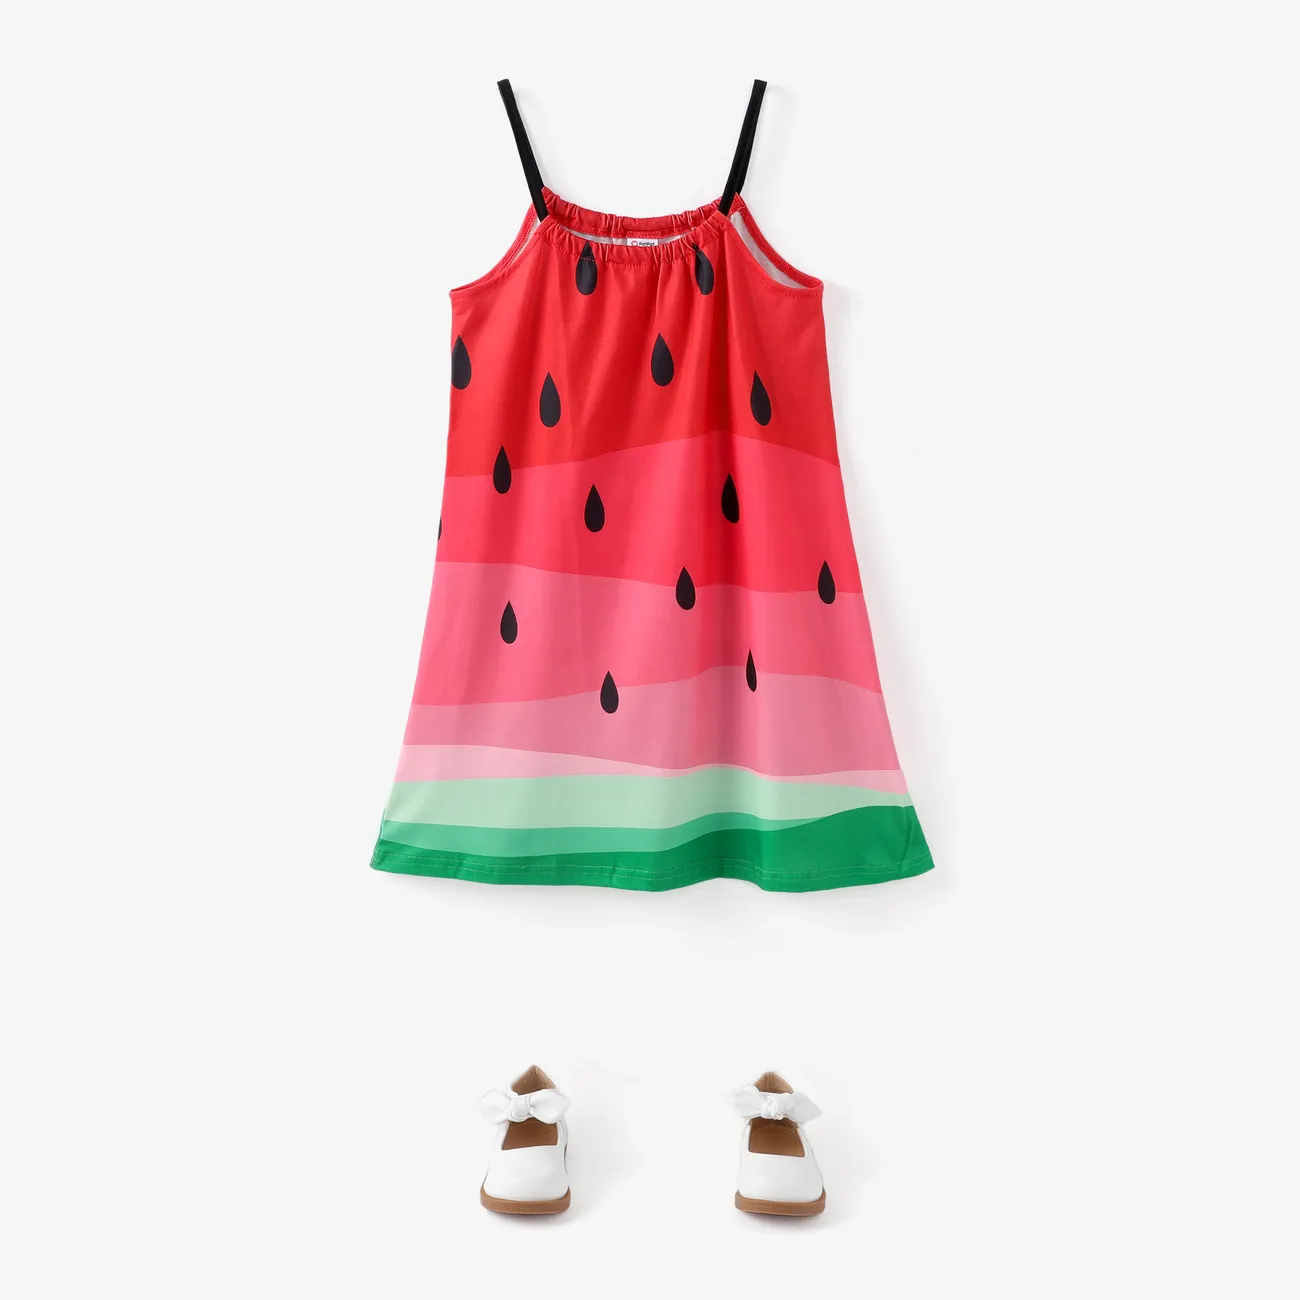 Kinder Mädchen Tanktop Obst und Gemüse Kleider Wassermelonenrot big image 1